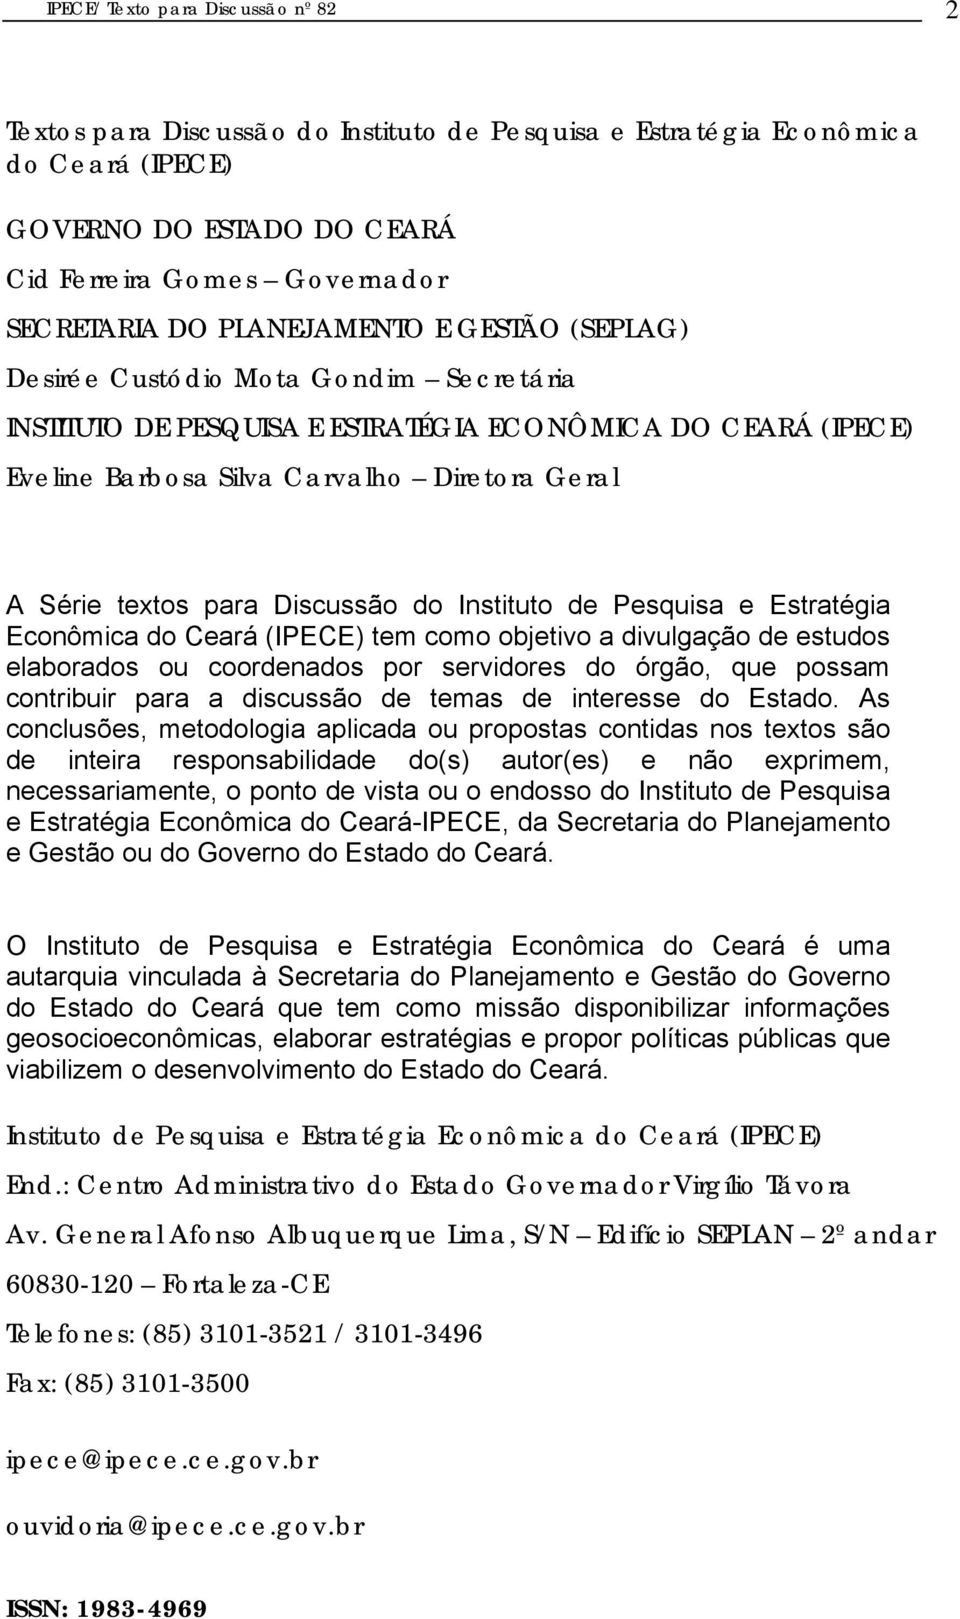 Discussão do Instituto de Pesquisa e Estratégia Econômica do Ceará (IPECE) tem como objetivo a divulgação de estudos elaborados ou coordenados por servidores do órgão, que possam contribuir para a